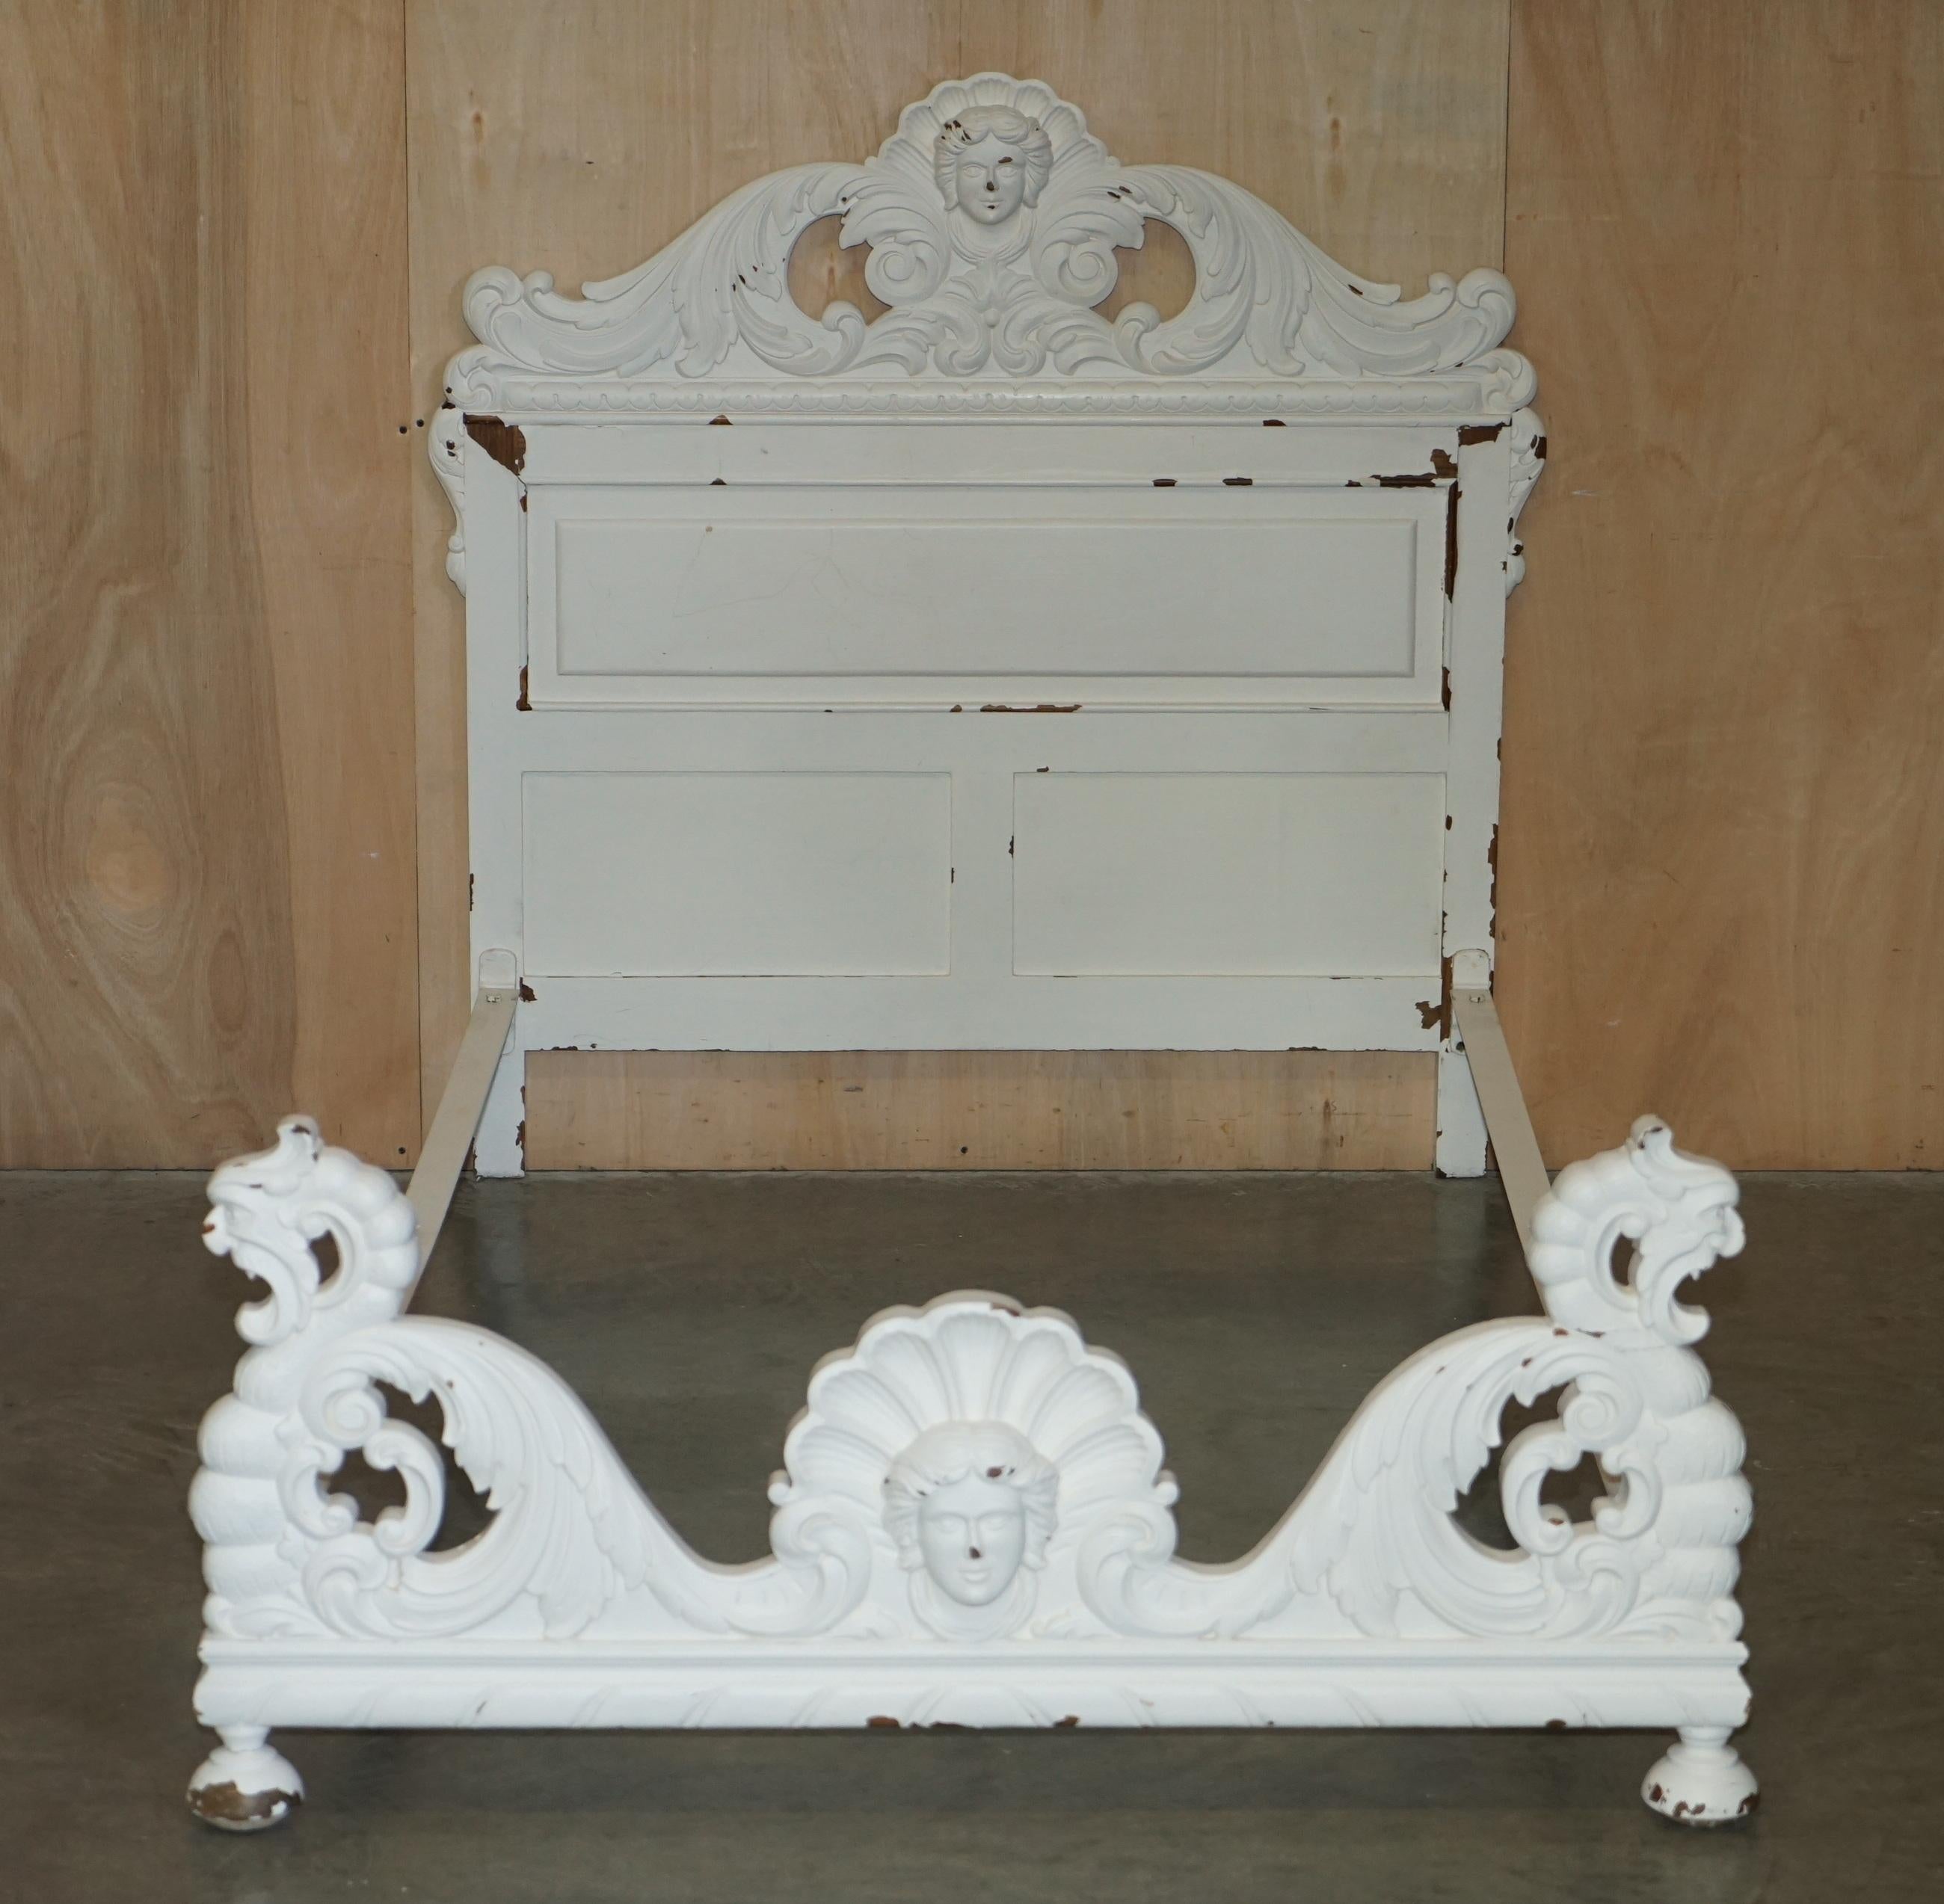 ornate bed frame